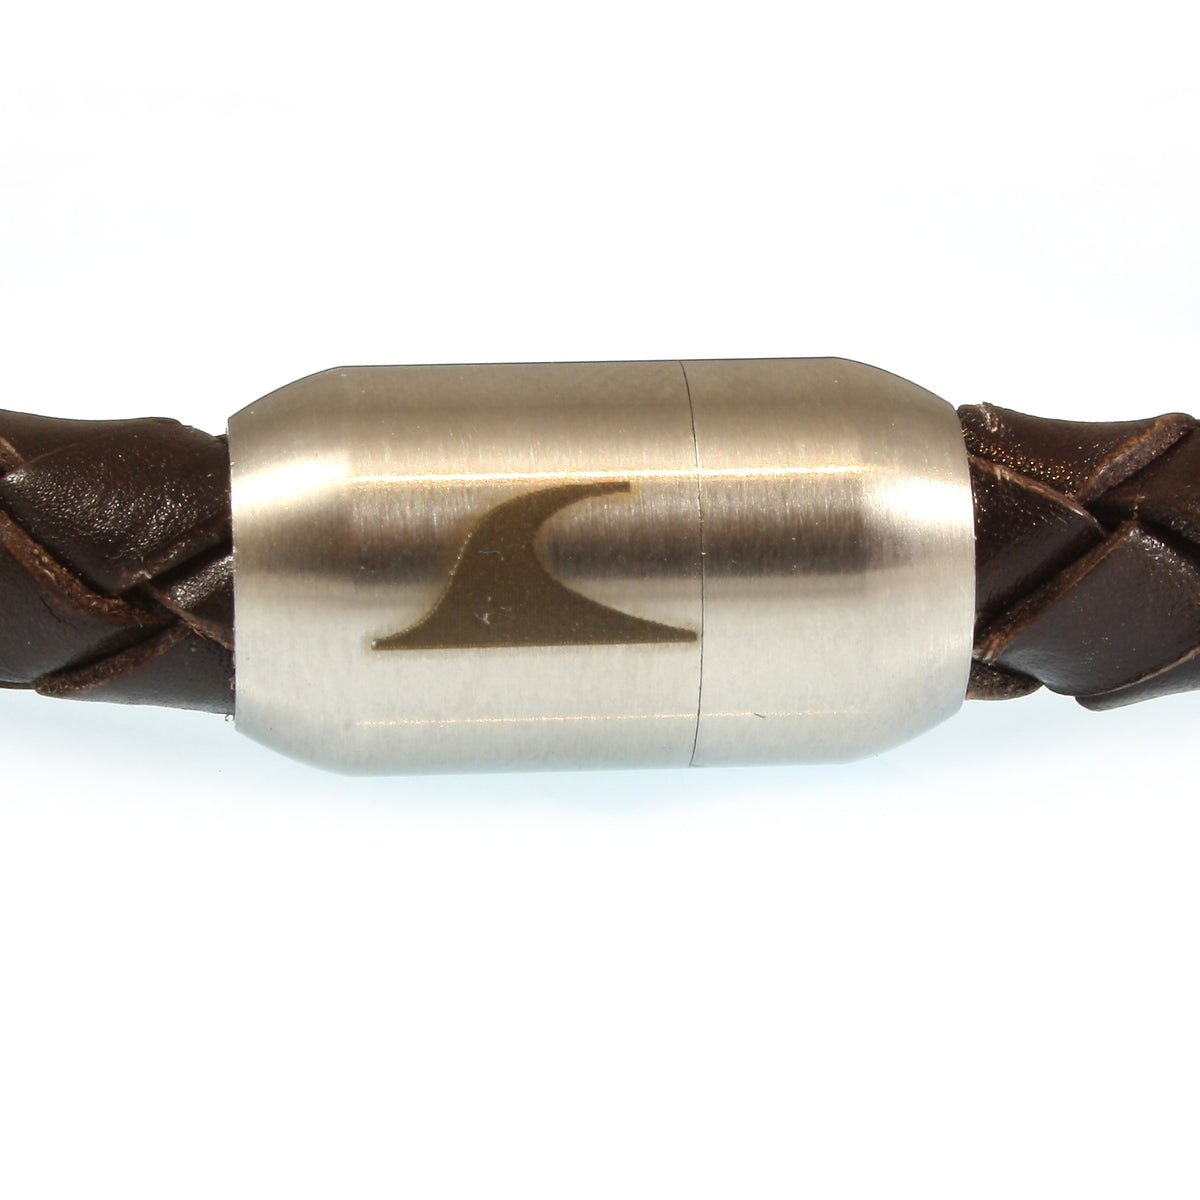 Herren-Leder-Armband-Fuerte-braun-geflochten-Edelstahlverschluss-detail-wavepirate-shop-f